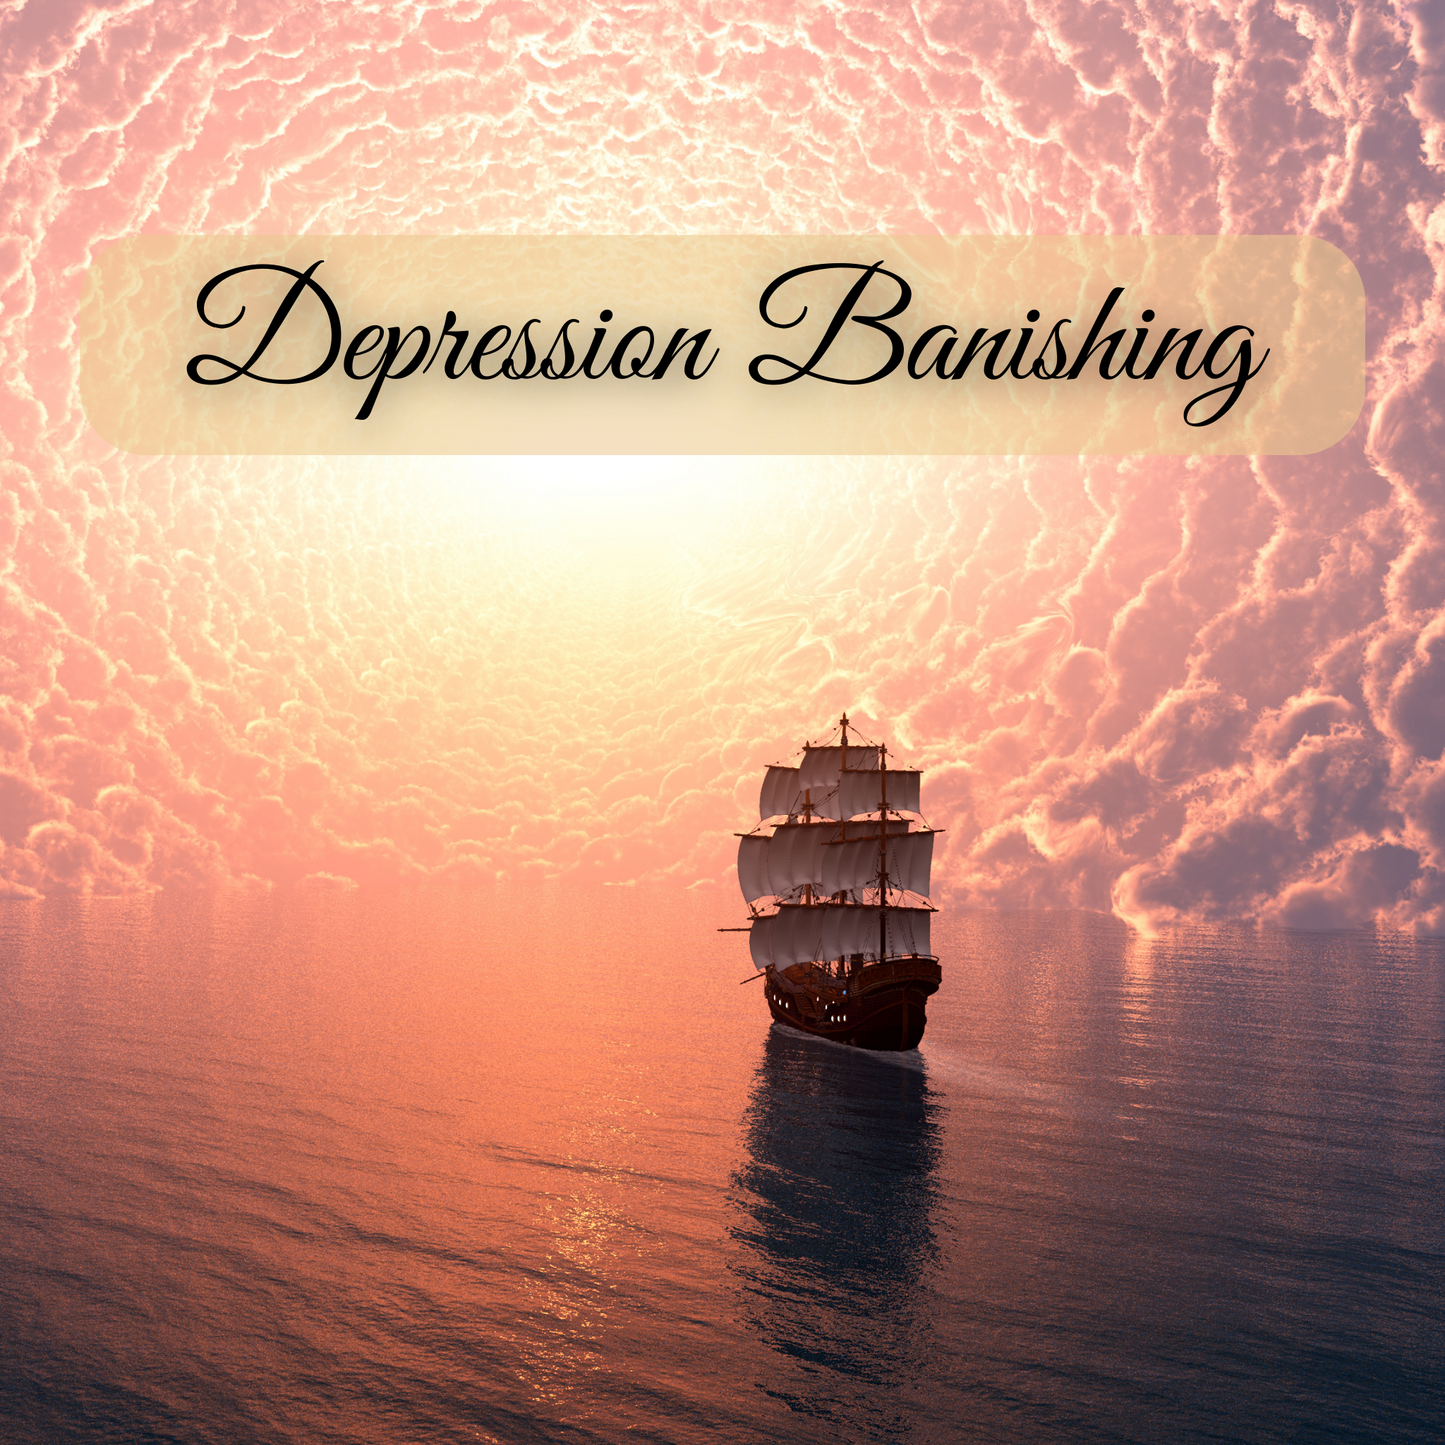 Depression Banishing